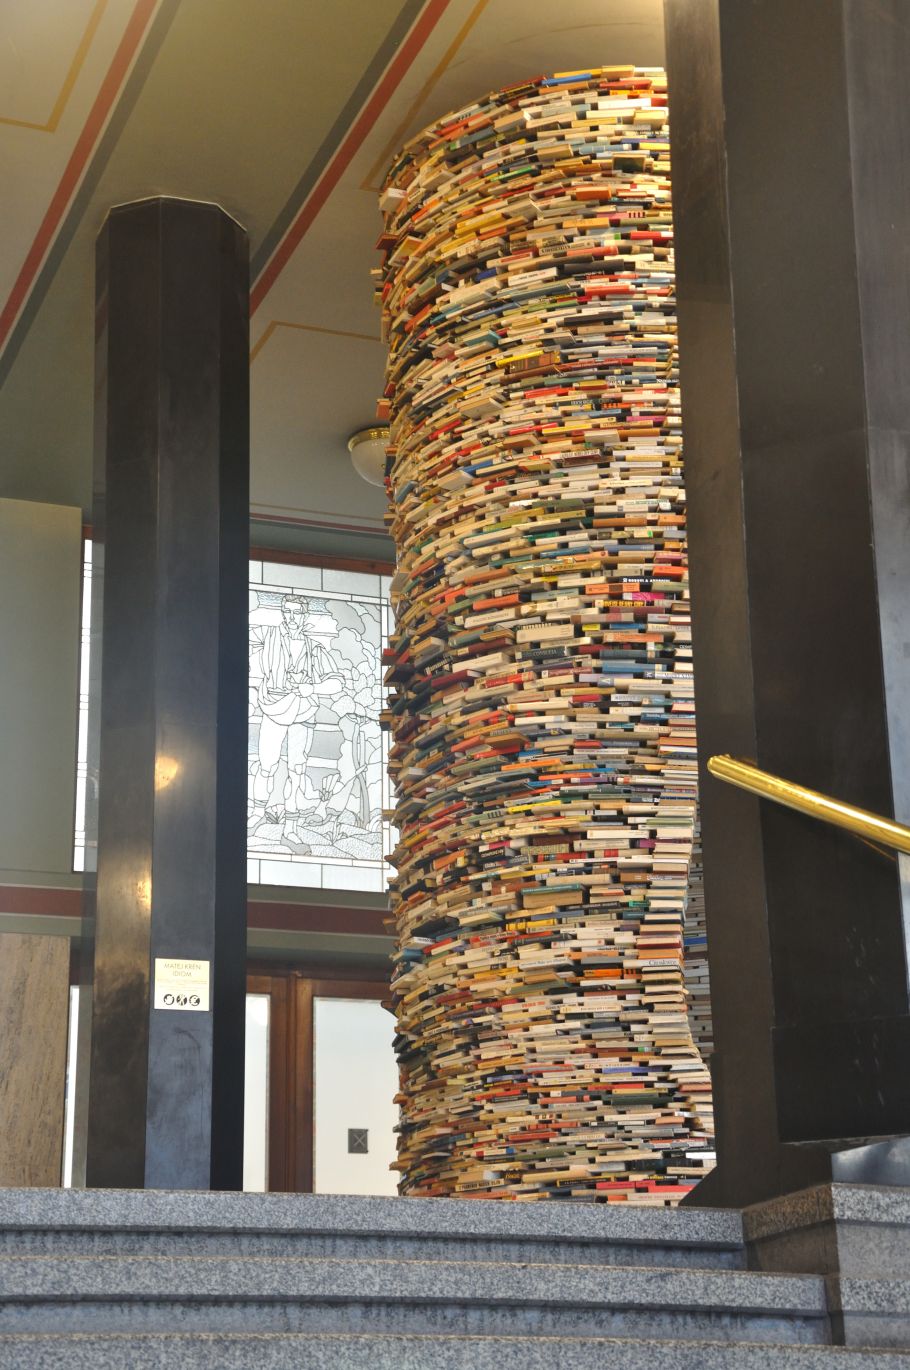 Zdjęcie wystającej zza filara wieży z książek, sięgającej od podłogi do sufitu.